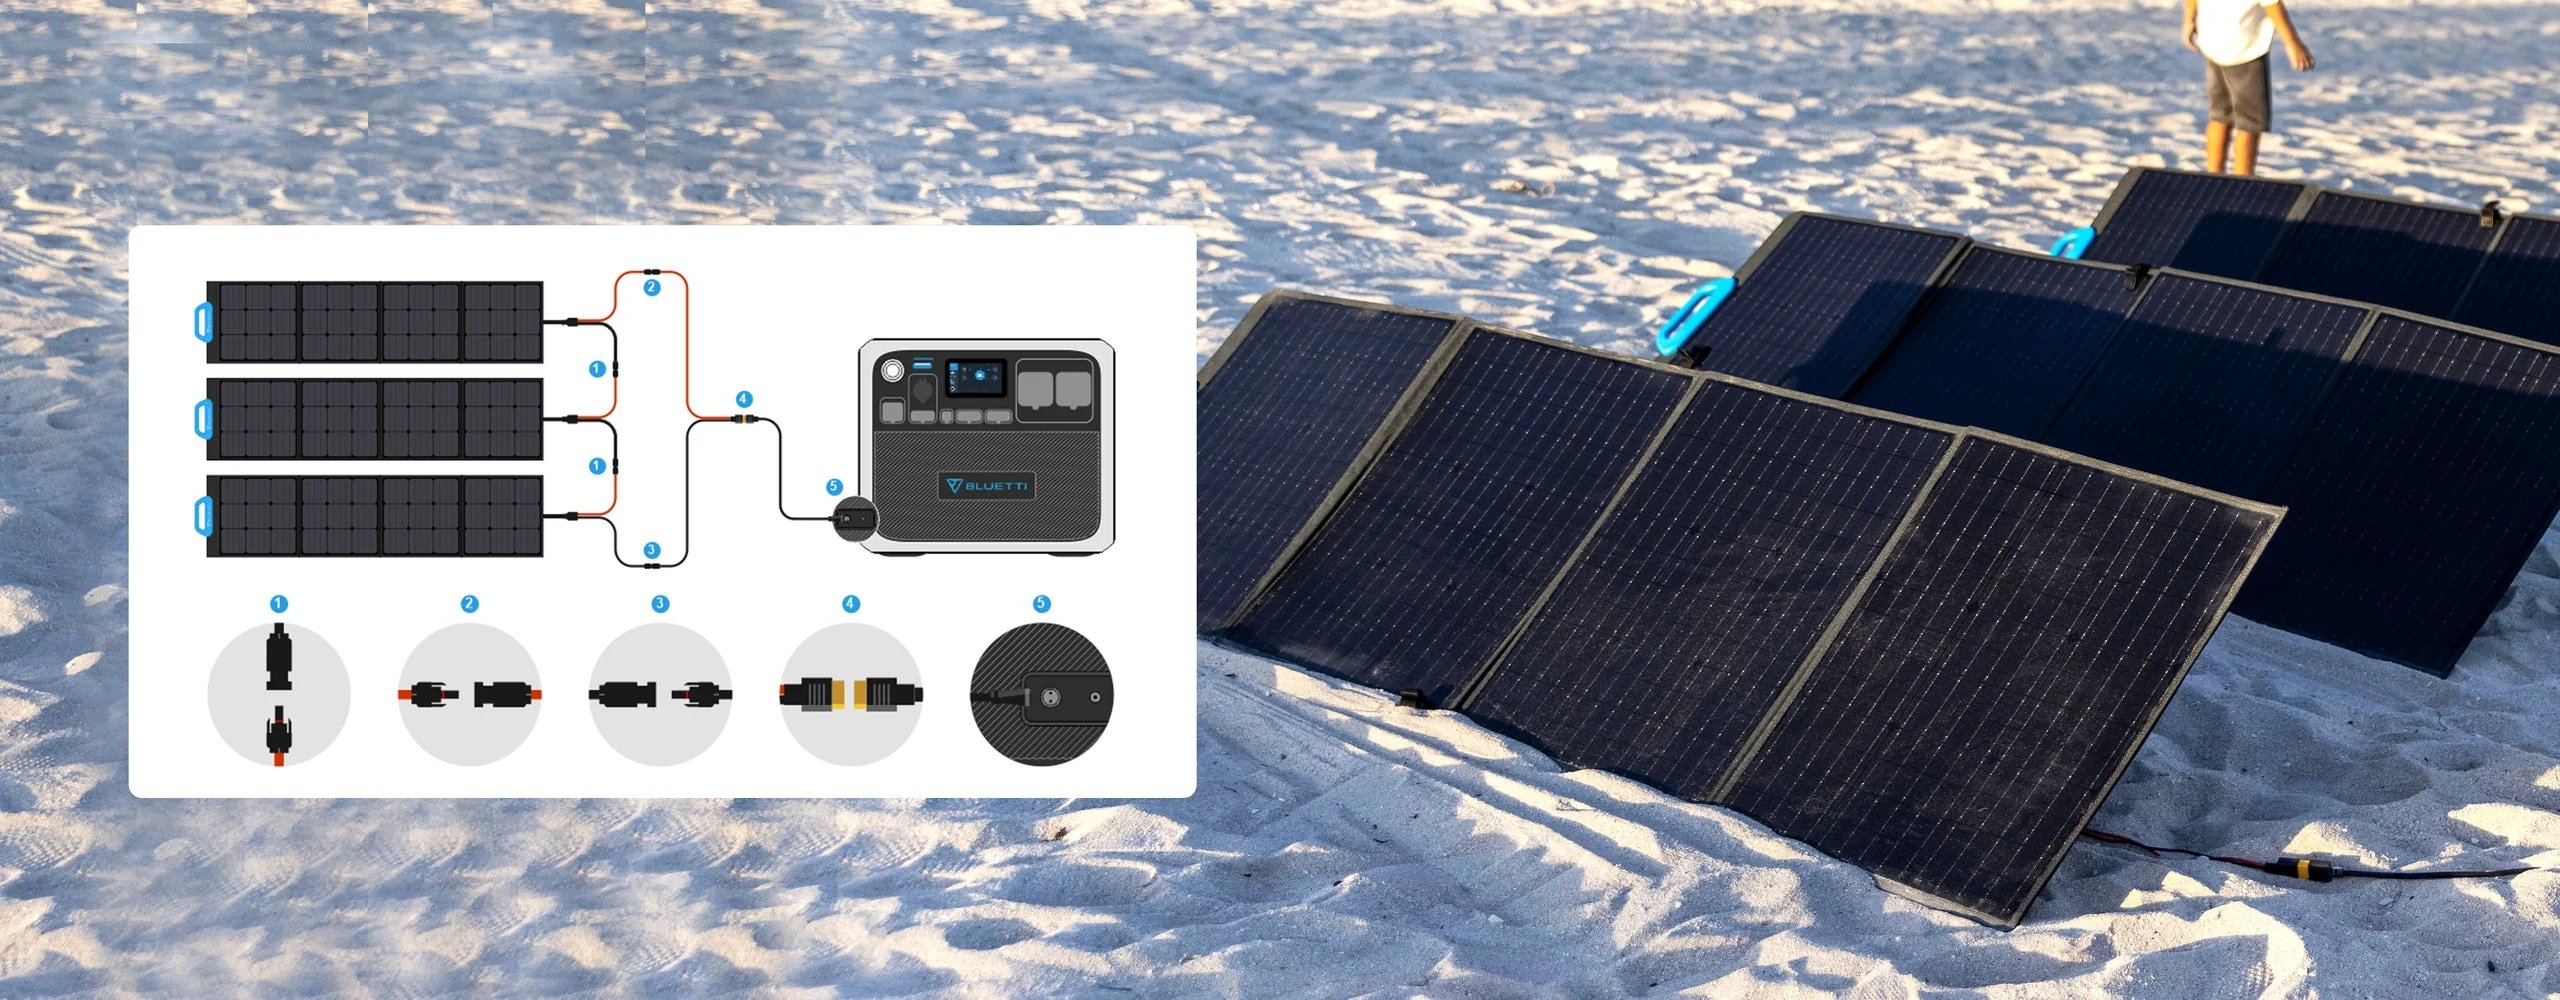 Panneau solaire Bluetti PV200 compatible avec batterie nomade de secours.